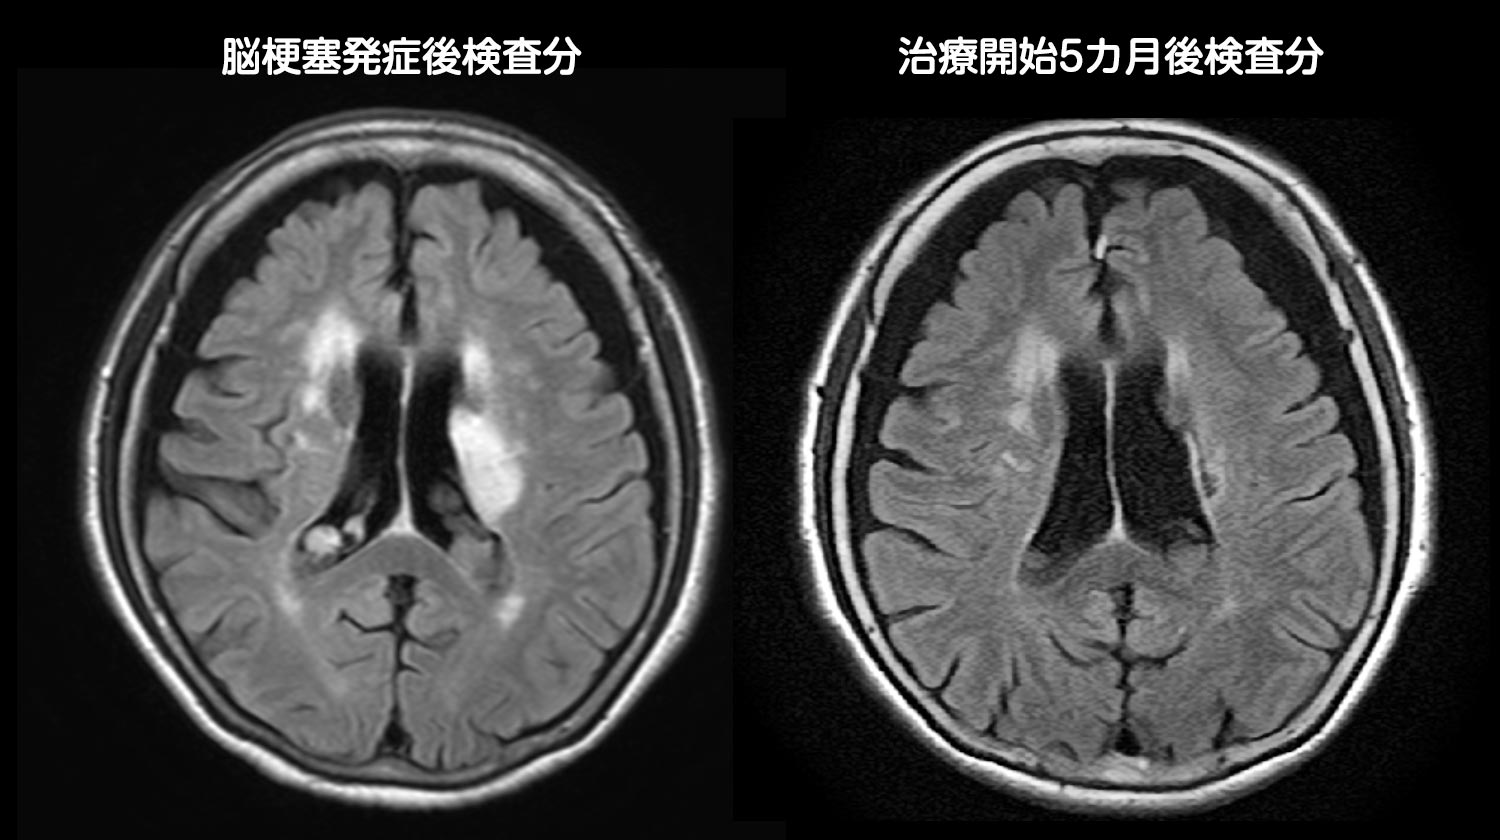 脳梗塞発症後の脳画像と治療開始5カ月後の脳画像との比較